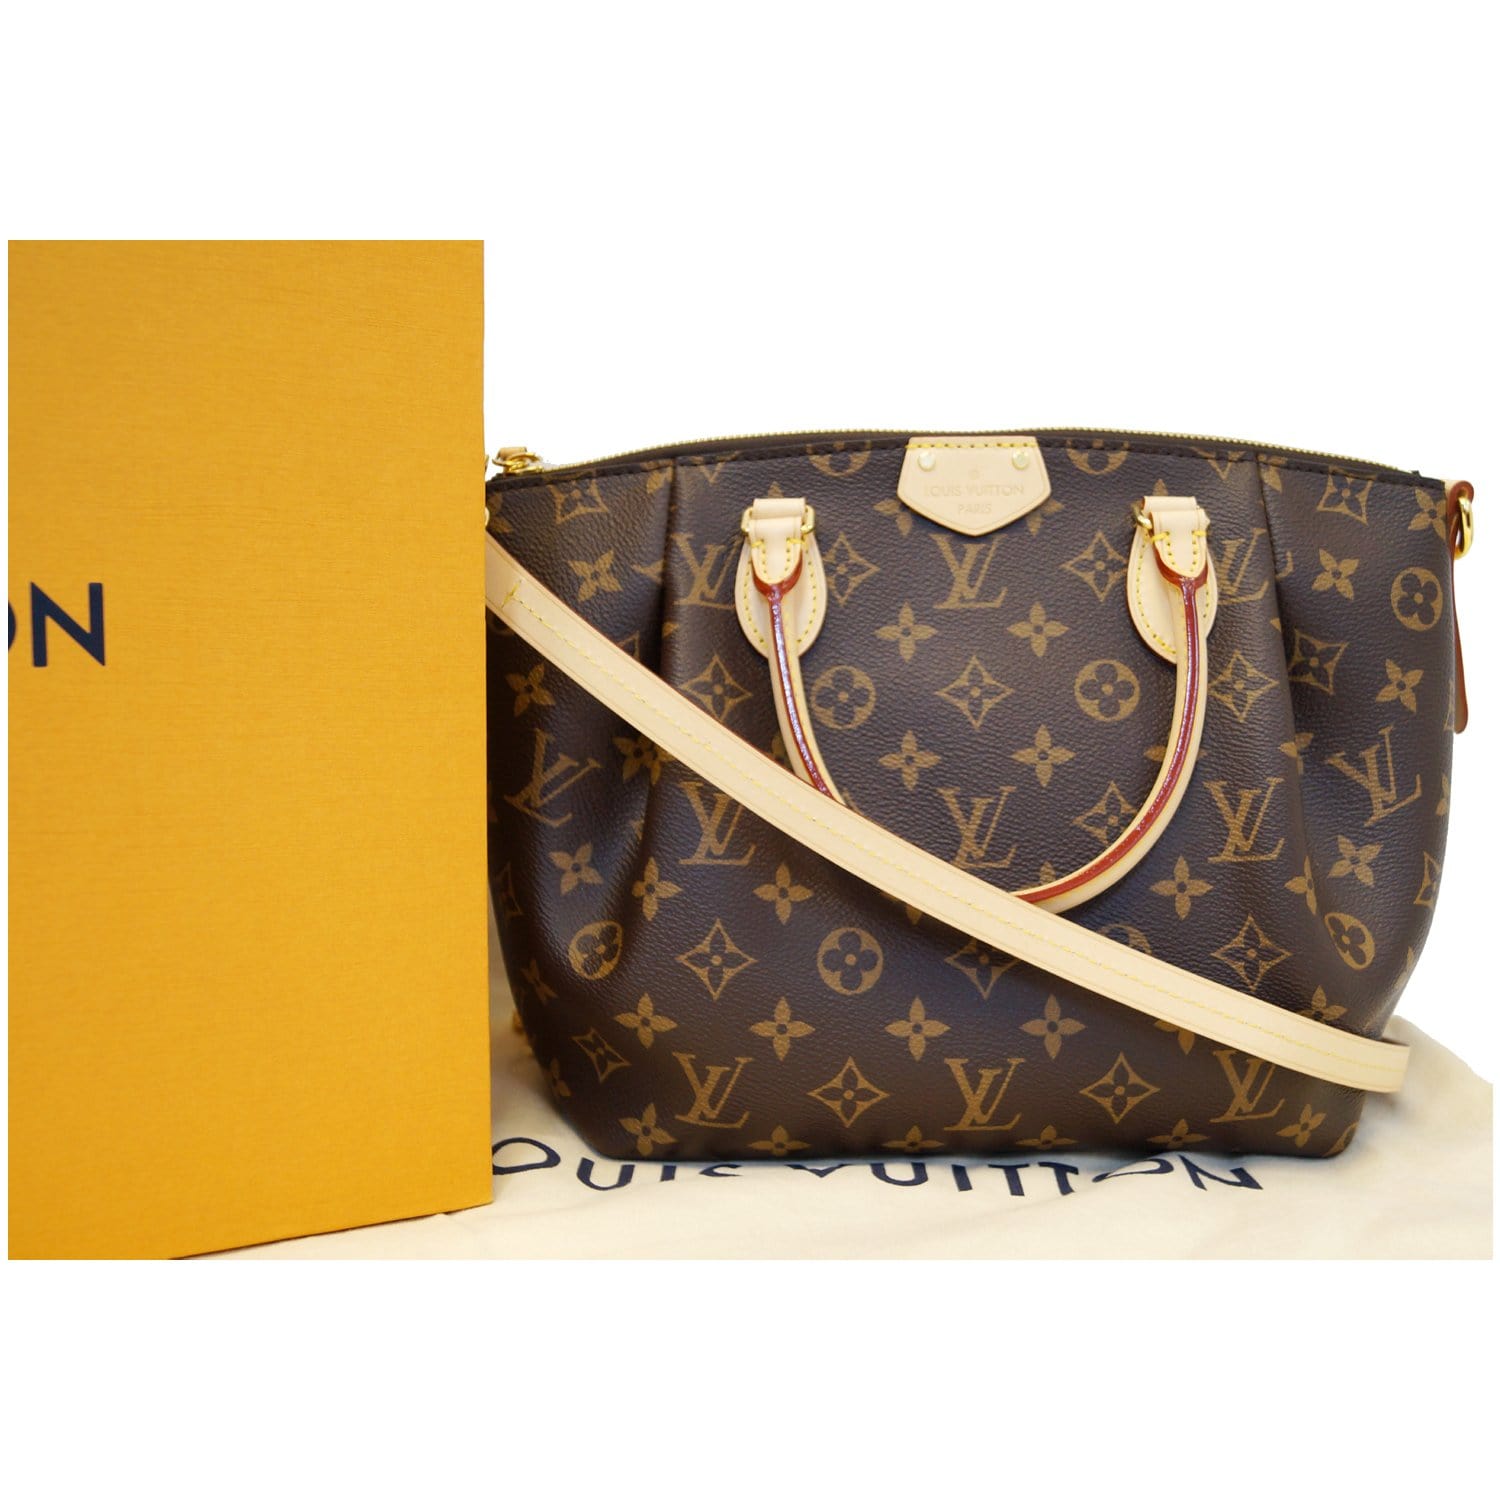 Bags, Louis Vuitton Turenne Pm